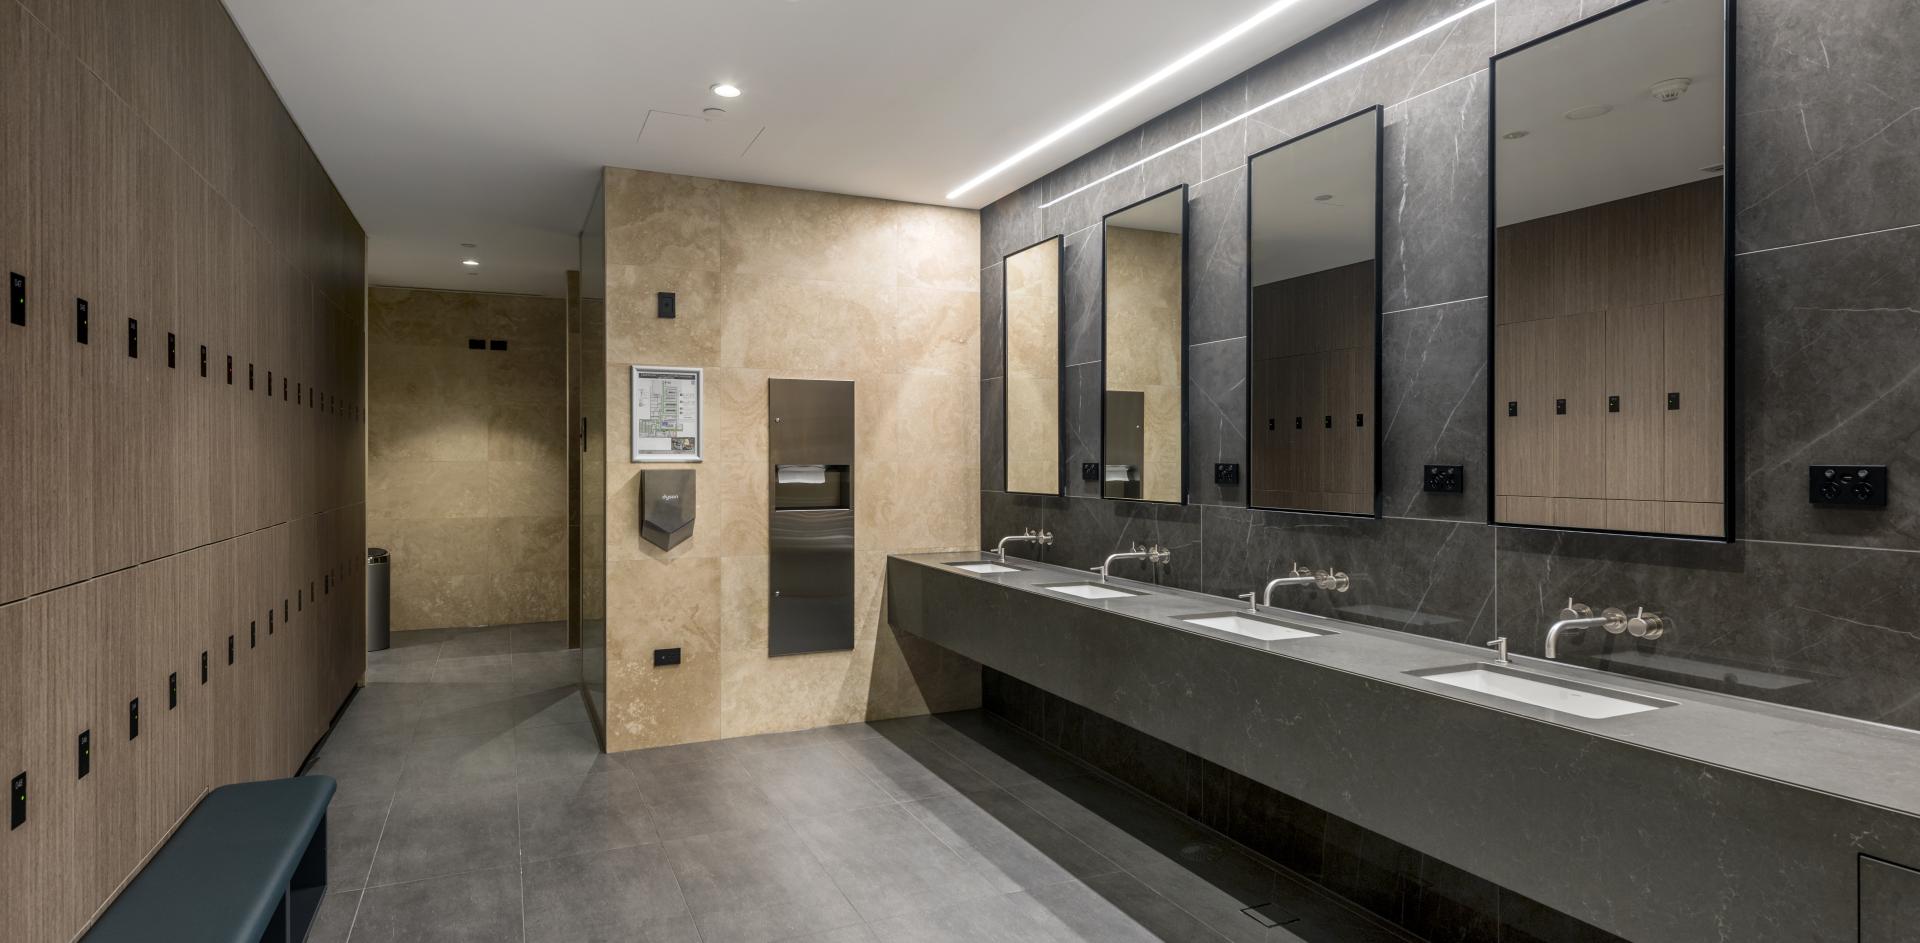 Modern bathroom facilities